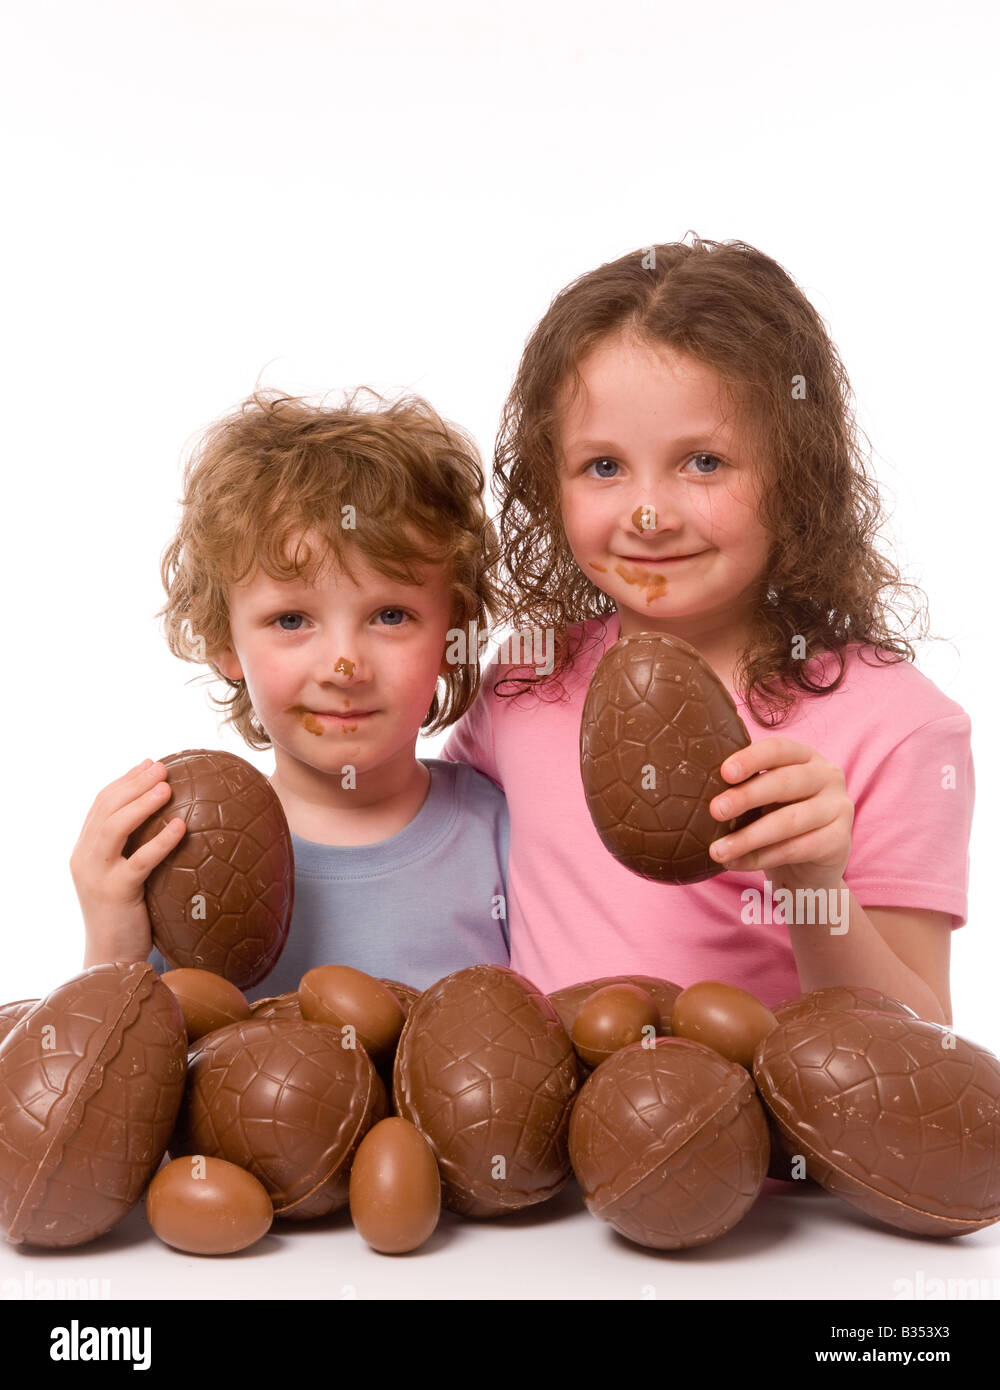 2 jeunes enfants avec du chocolat sur leur visage, chacun tenant un morceau d'oeuf de chocolat, avec beaucoup plus d'oeufs de Pâques au premier plan. Arrière-plan blanc Banque D'Images